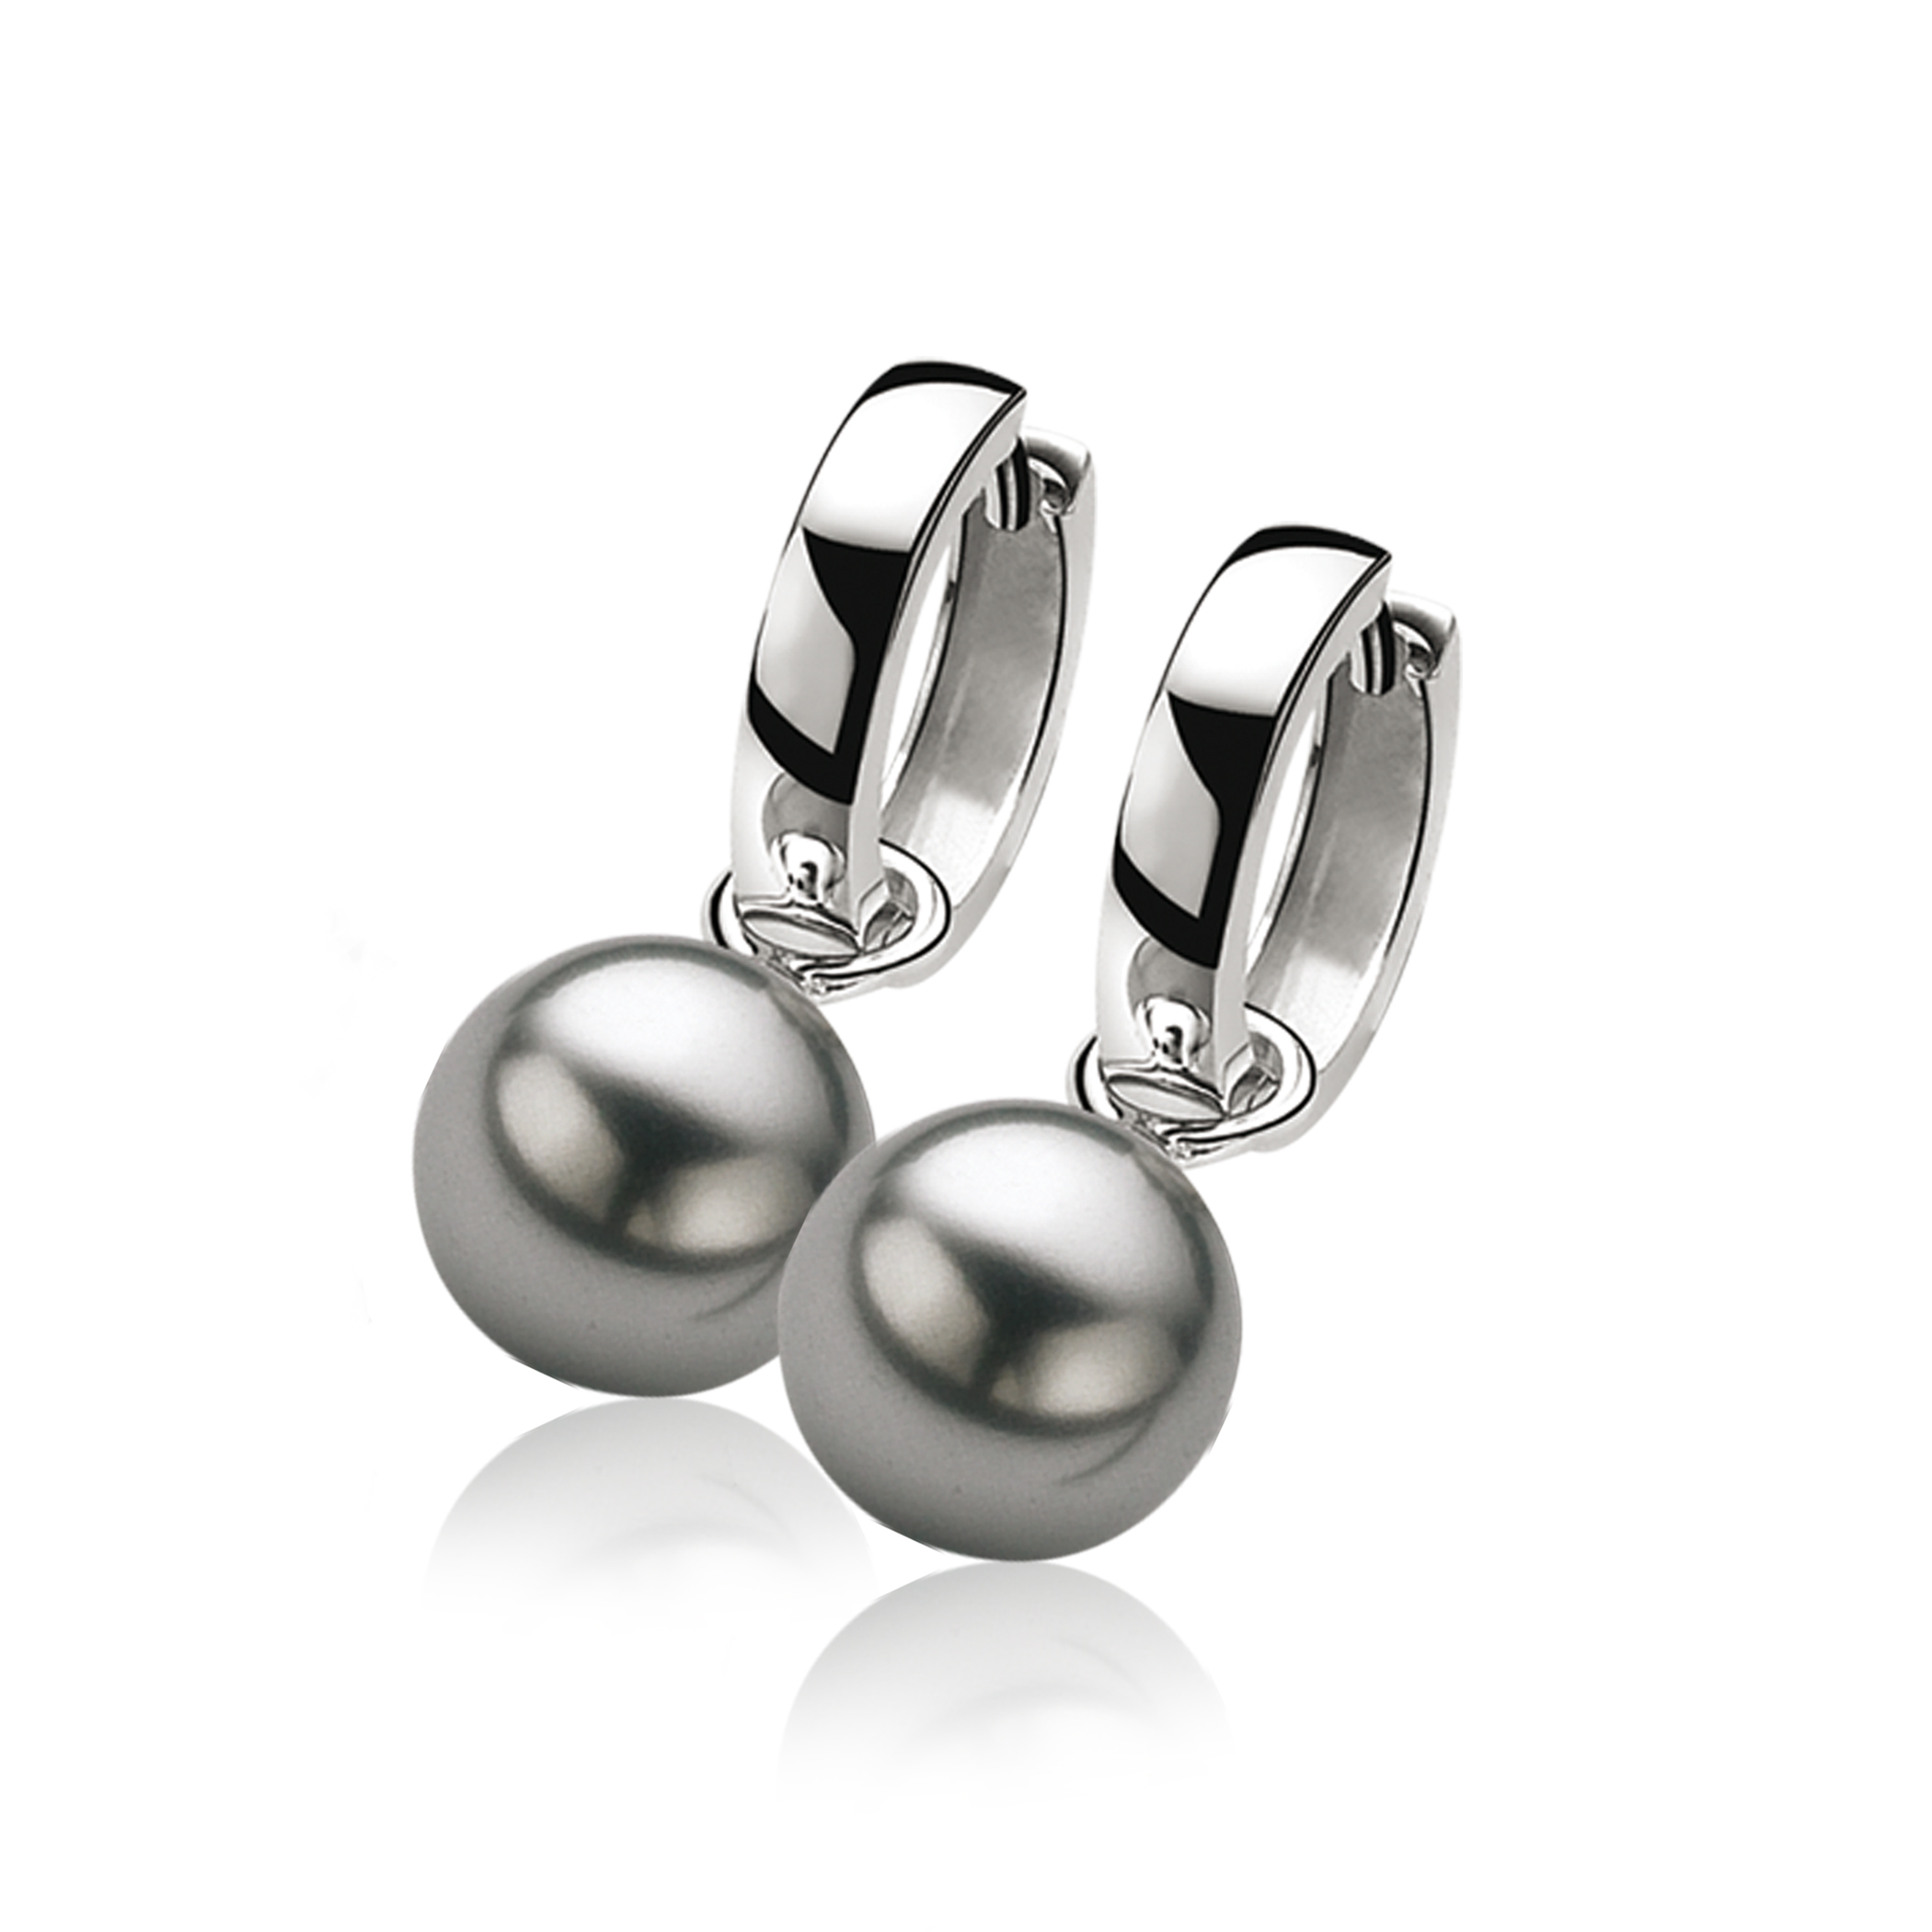 10mm ZINZI Sterling Silver Earrings Pendants Pearl Grey ZICH266G (excl. hoop earrings)